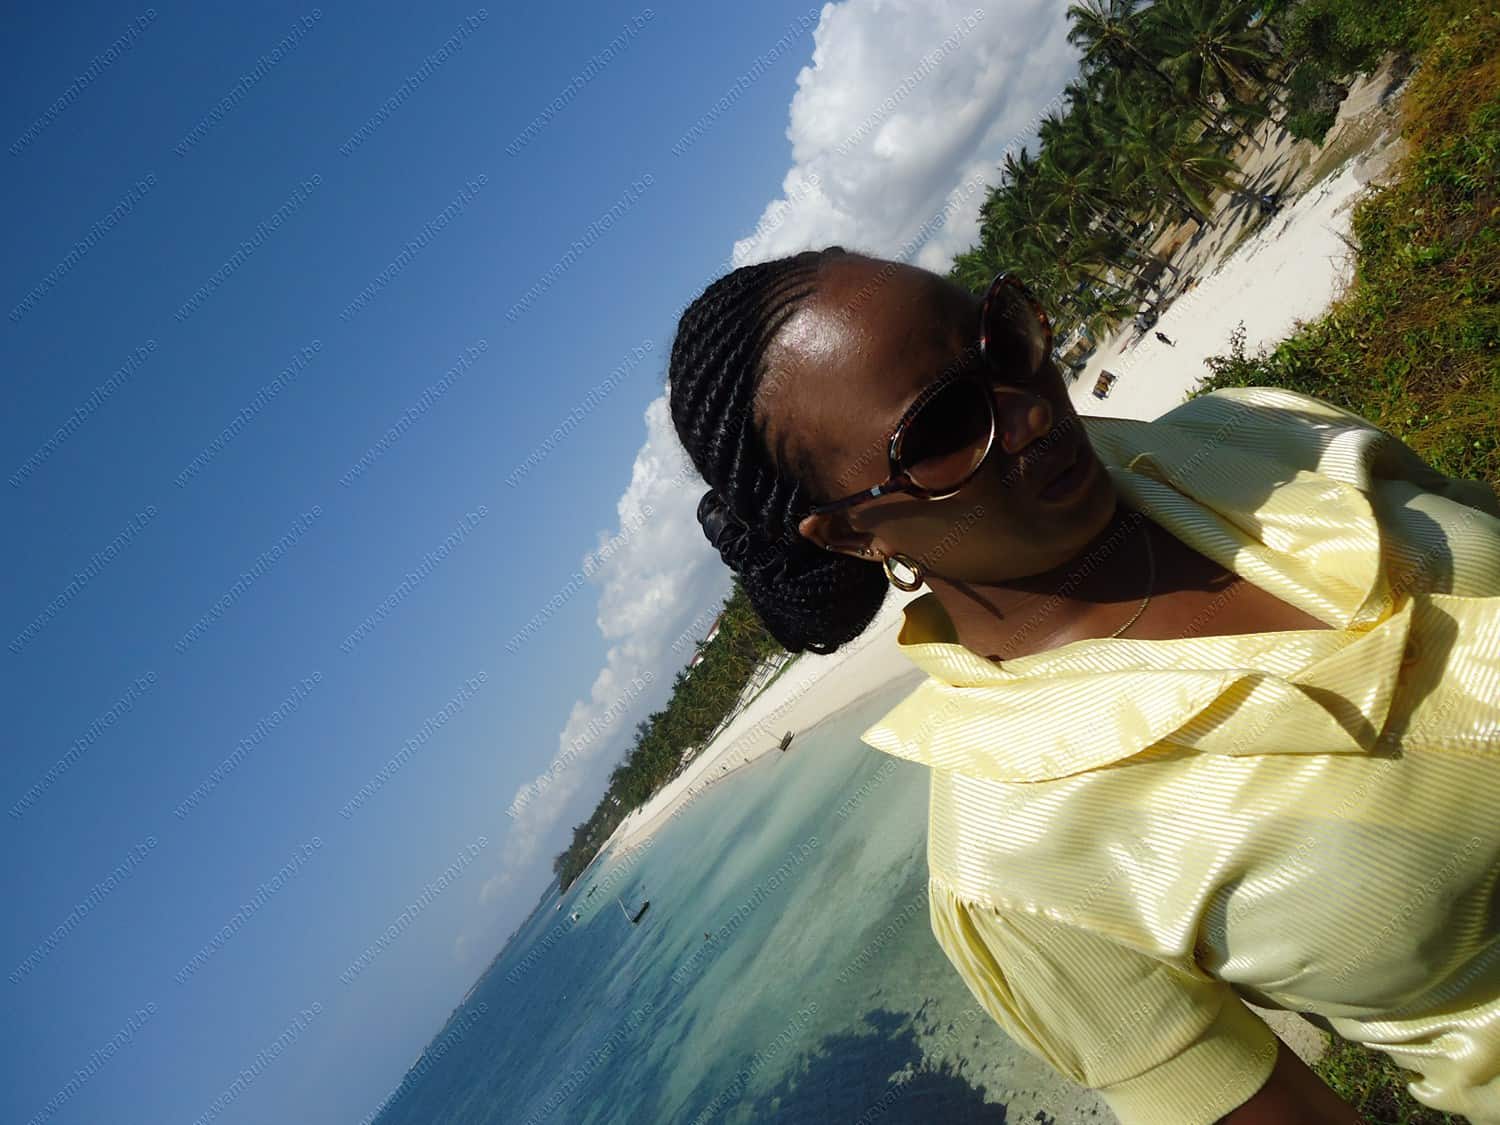 Diani Beach Kenya